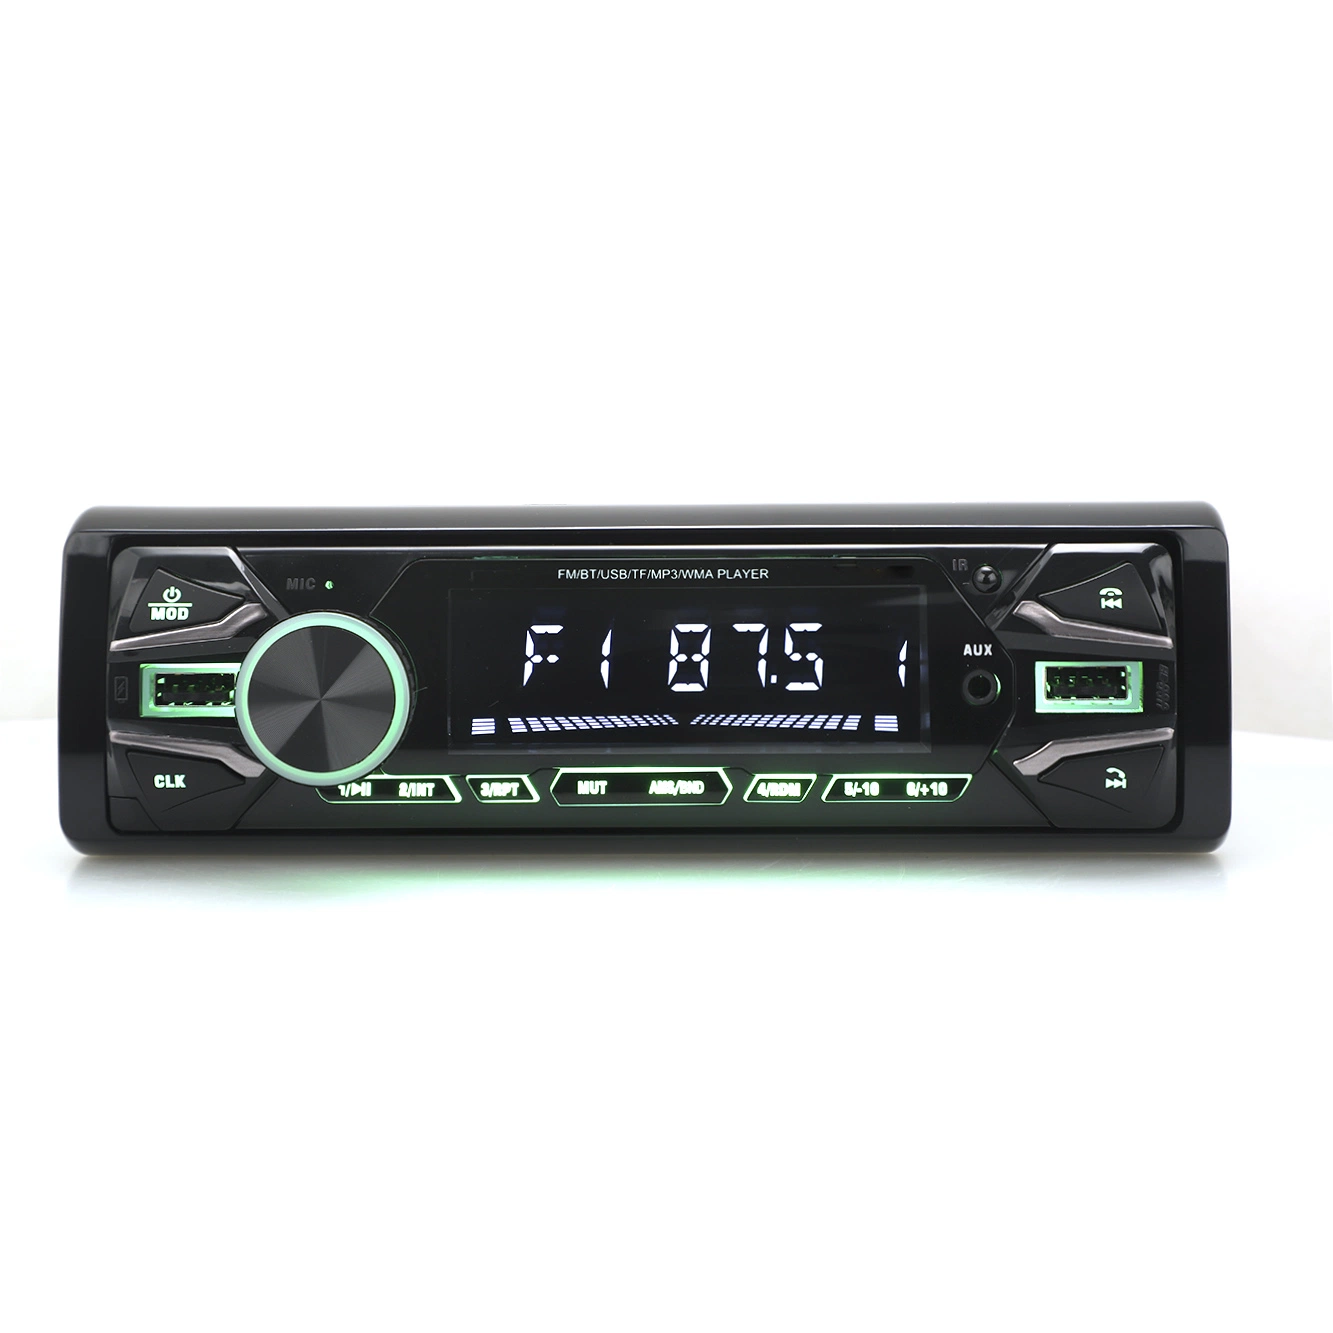 FM-передатчик Аудио Автоаудио Автозвук Автостерео автомобиль аудио Аксессуары автомобильный MP3-плеер